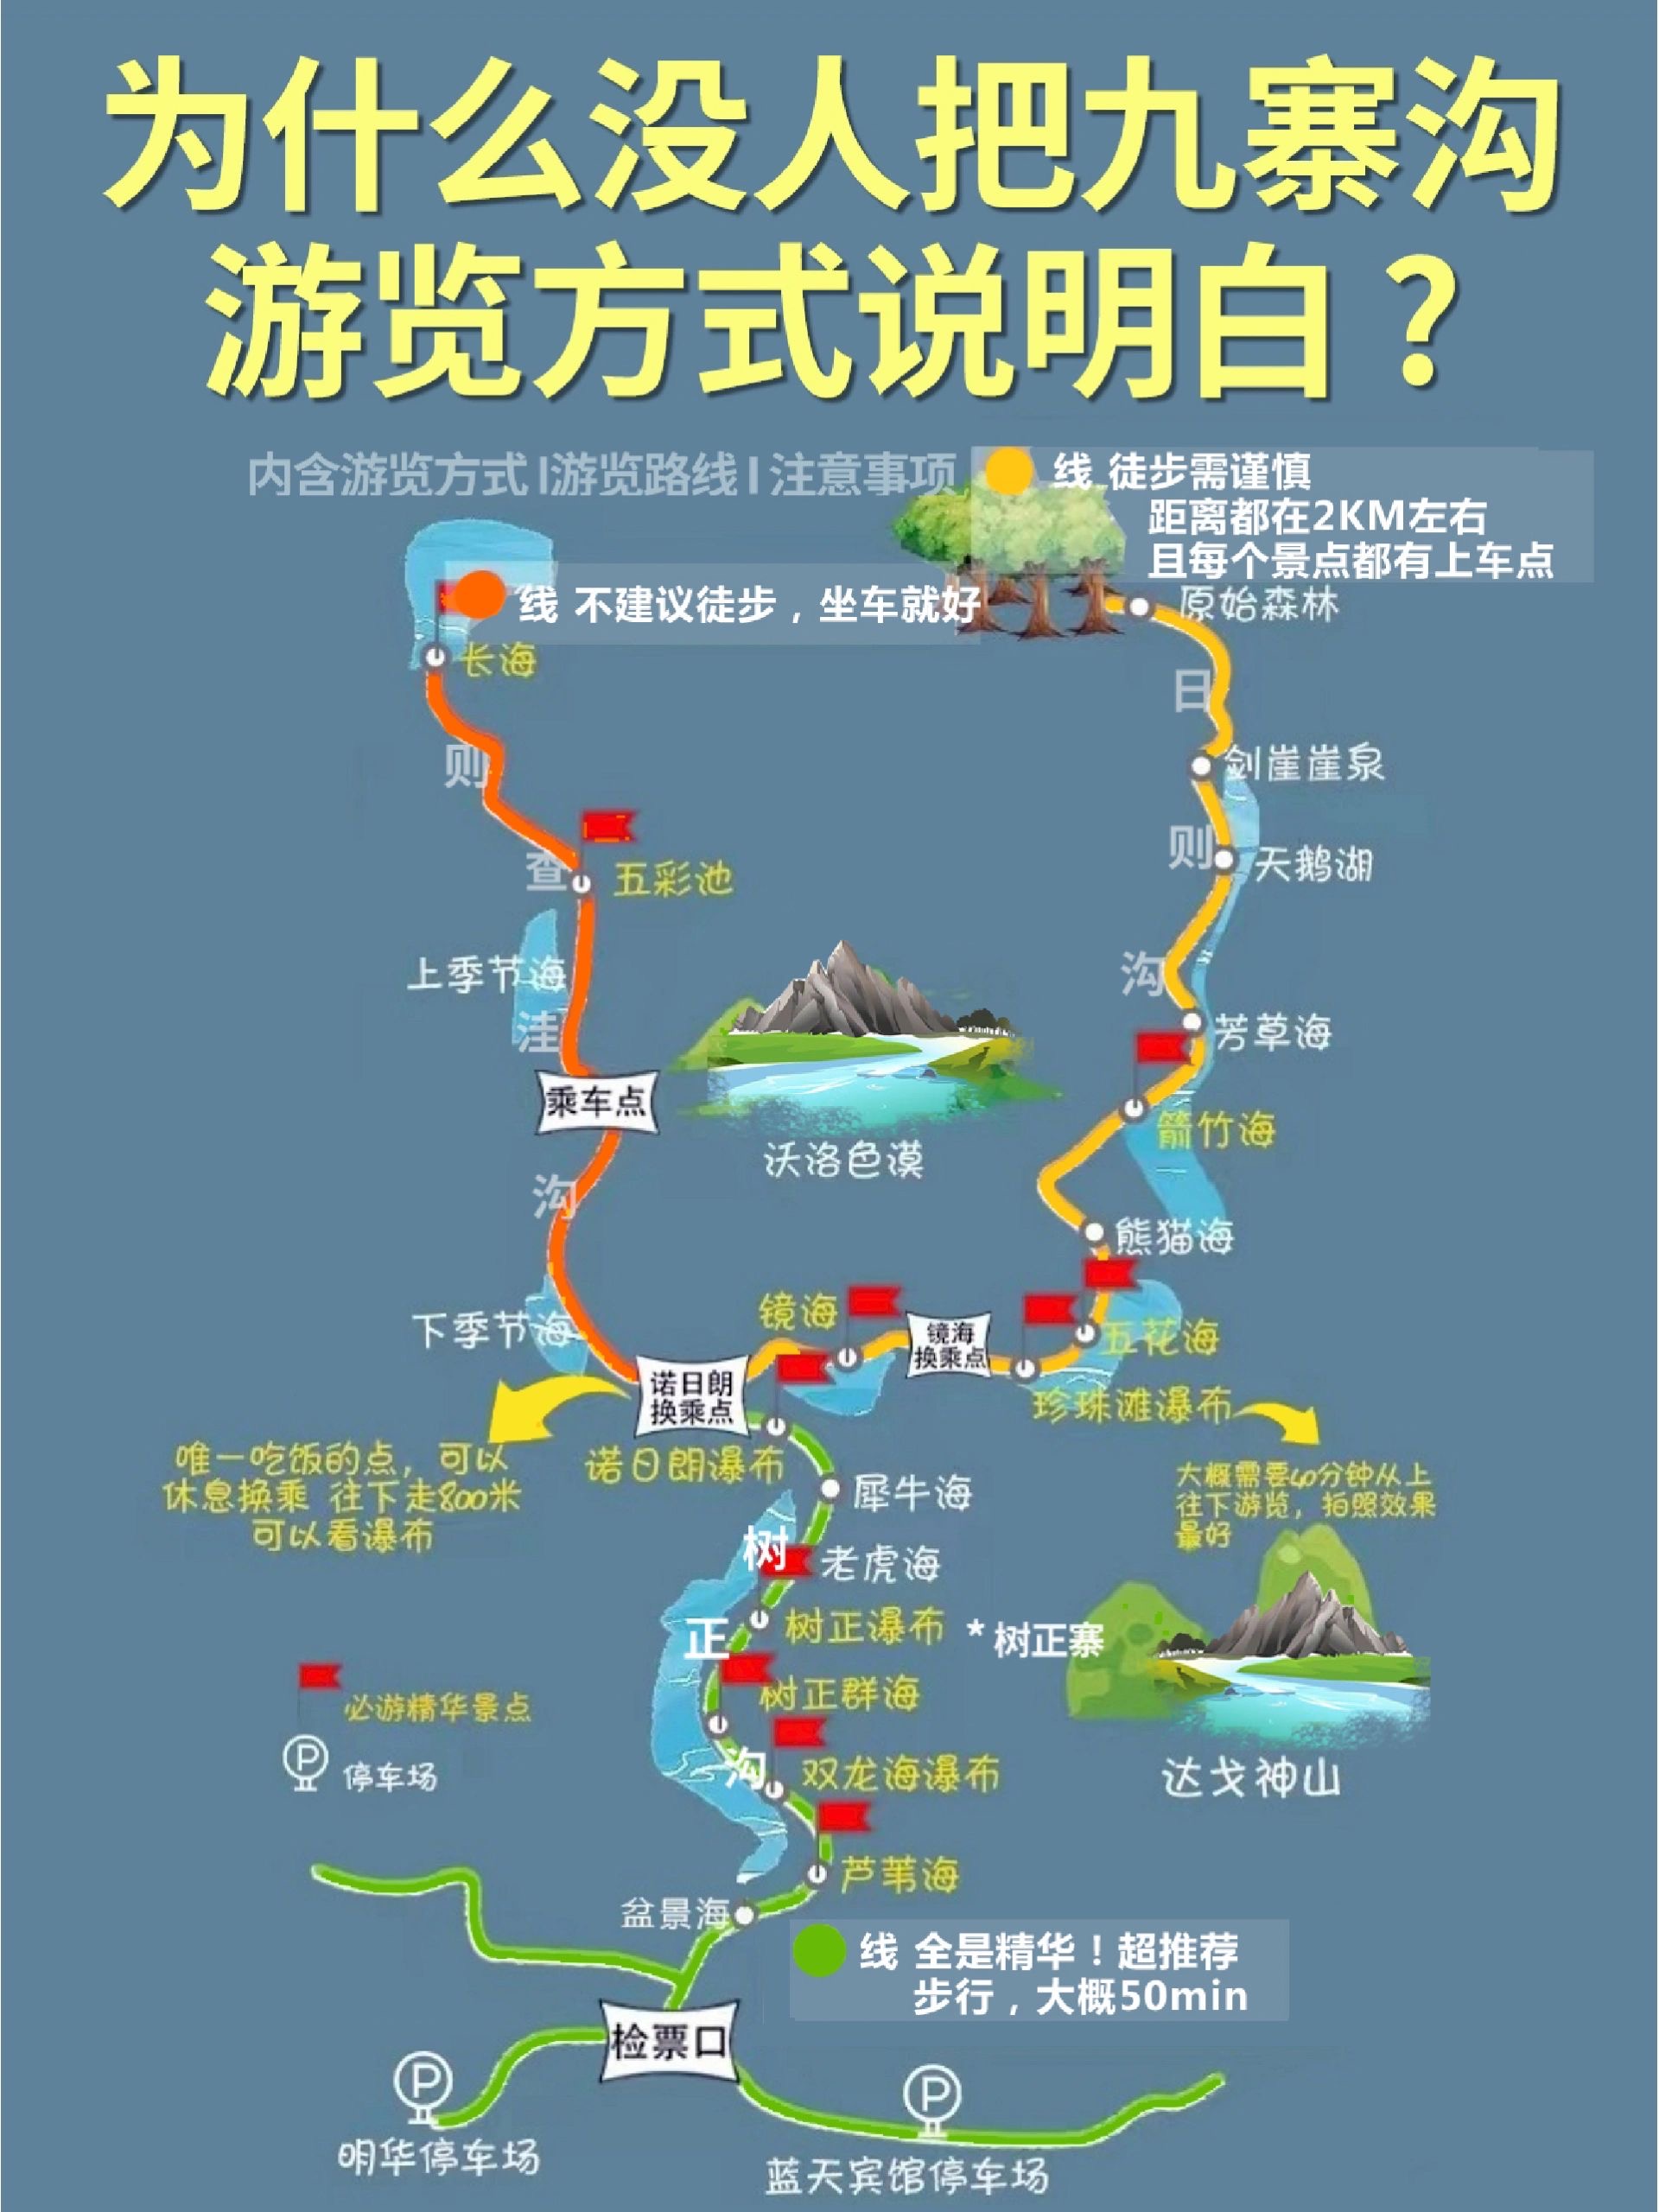 九寨沟景区路线图图片